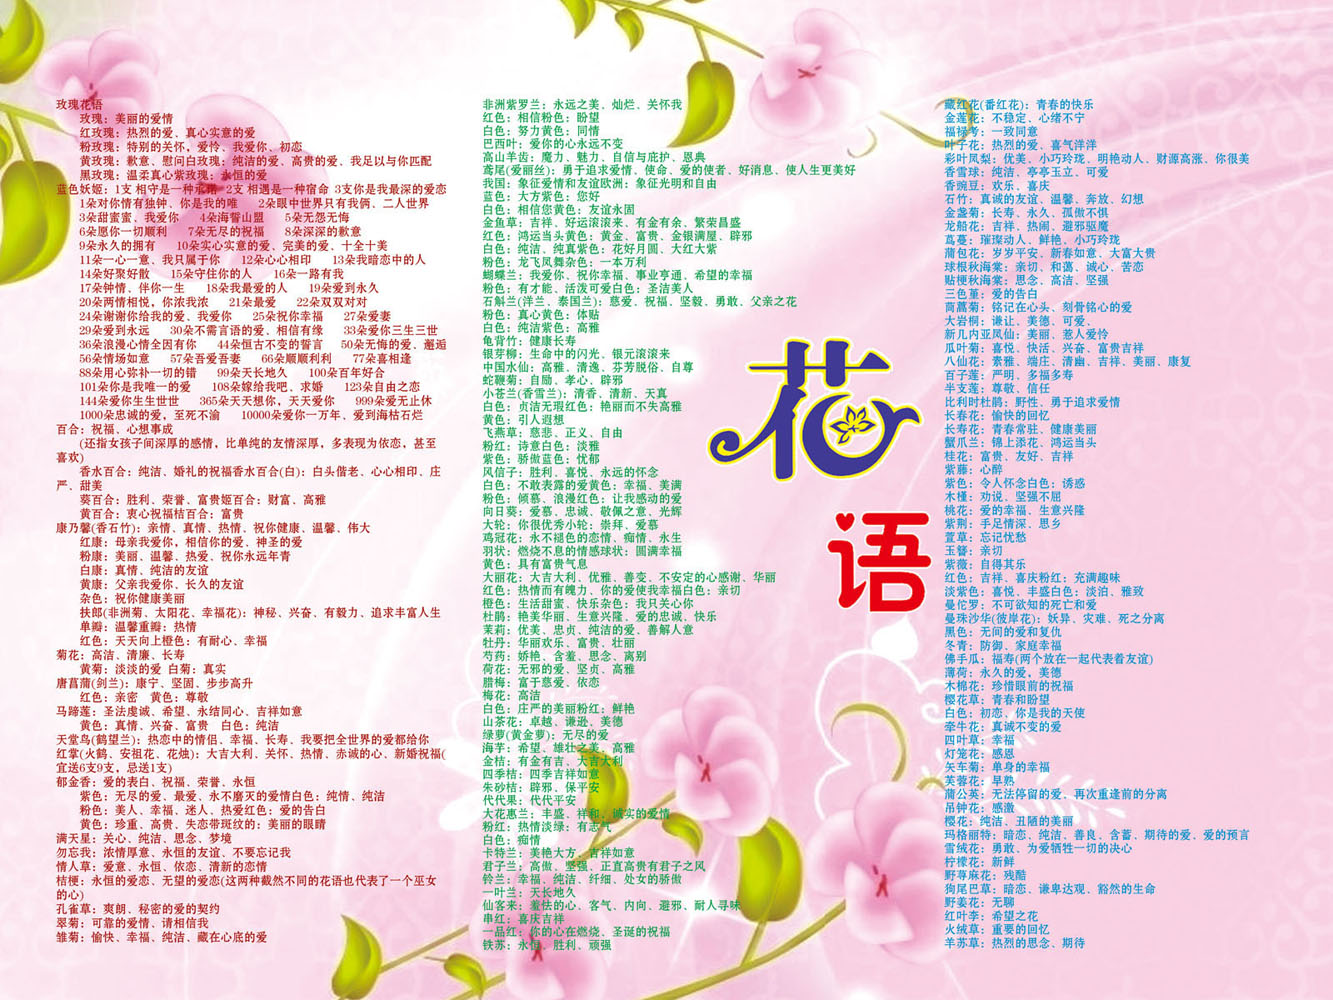 514贴纸海报展板喷绘素材贴纸图片6各种花玫瑰花语及意义